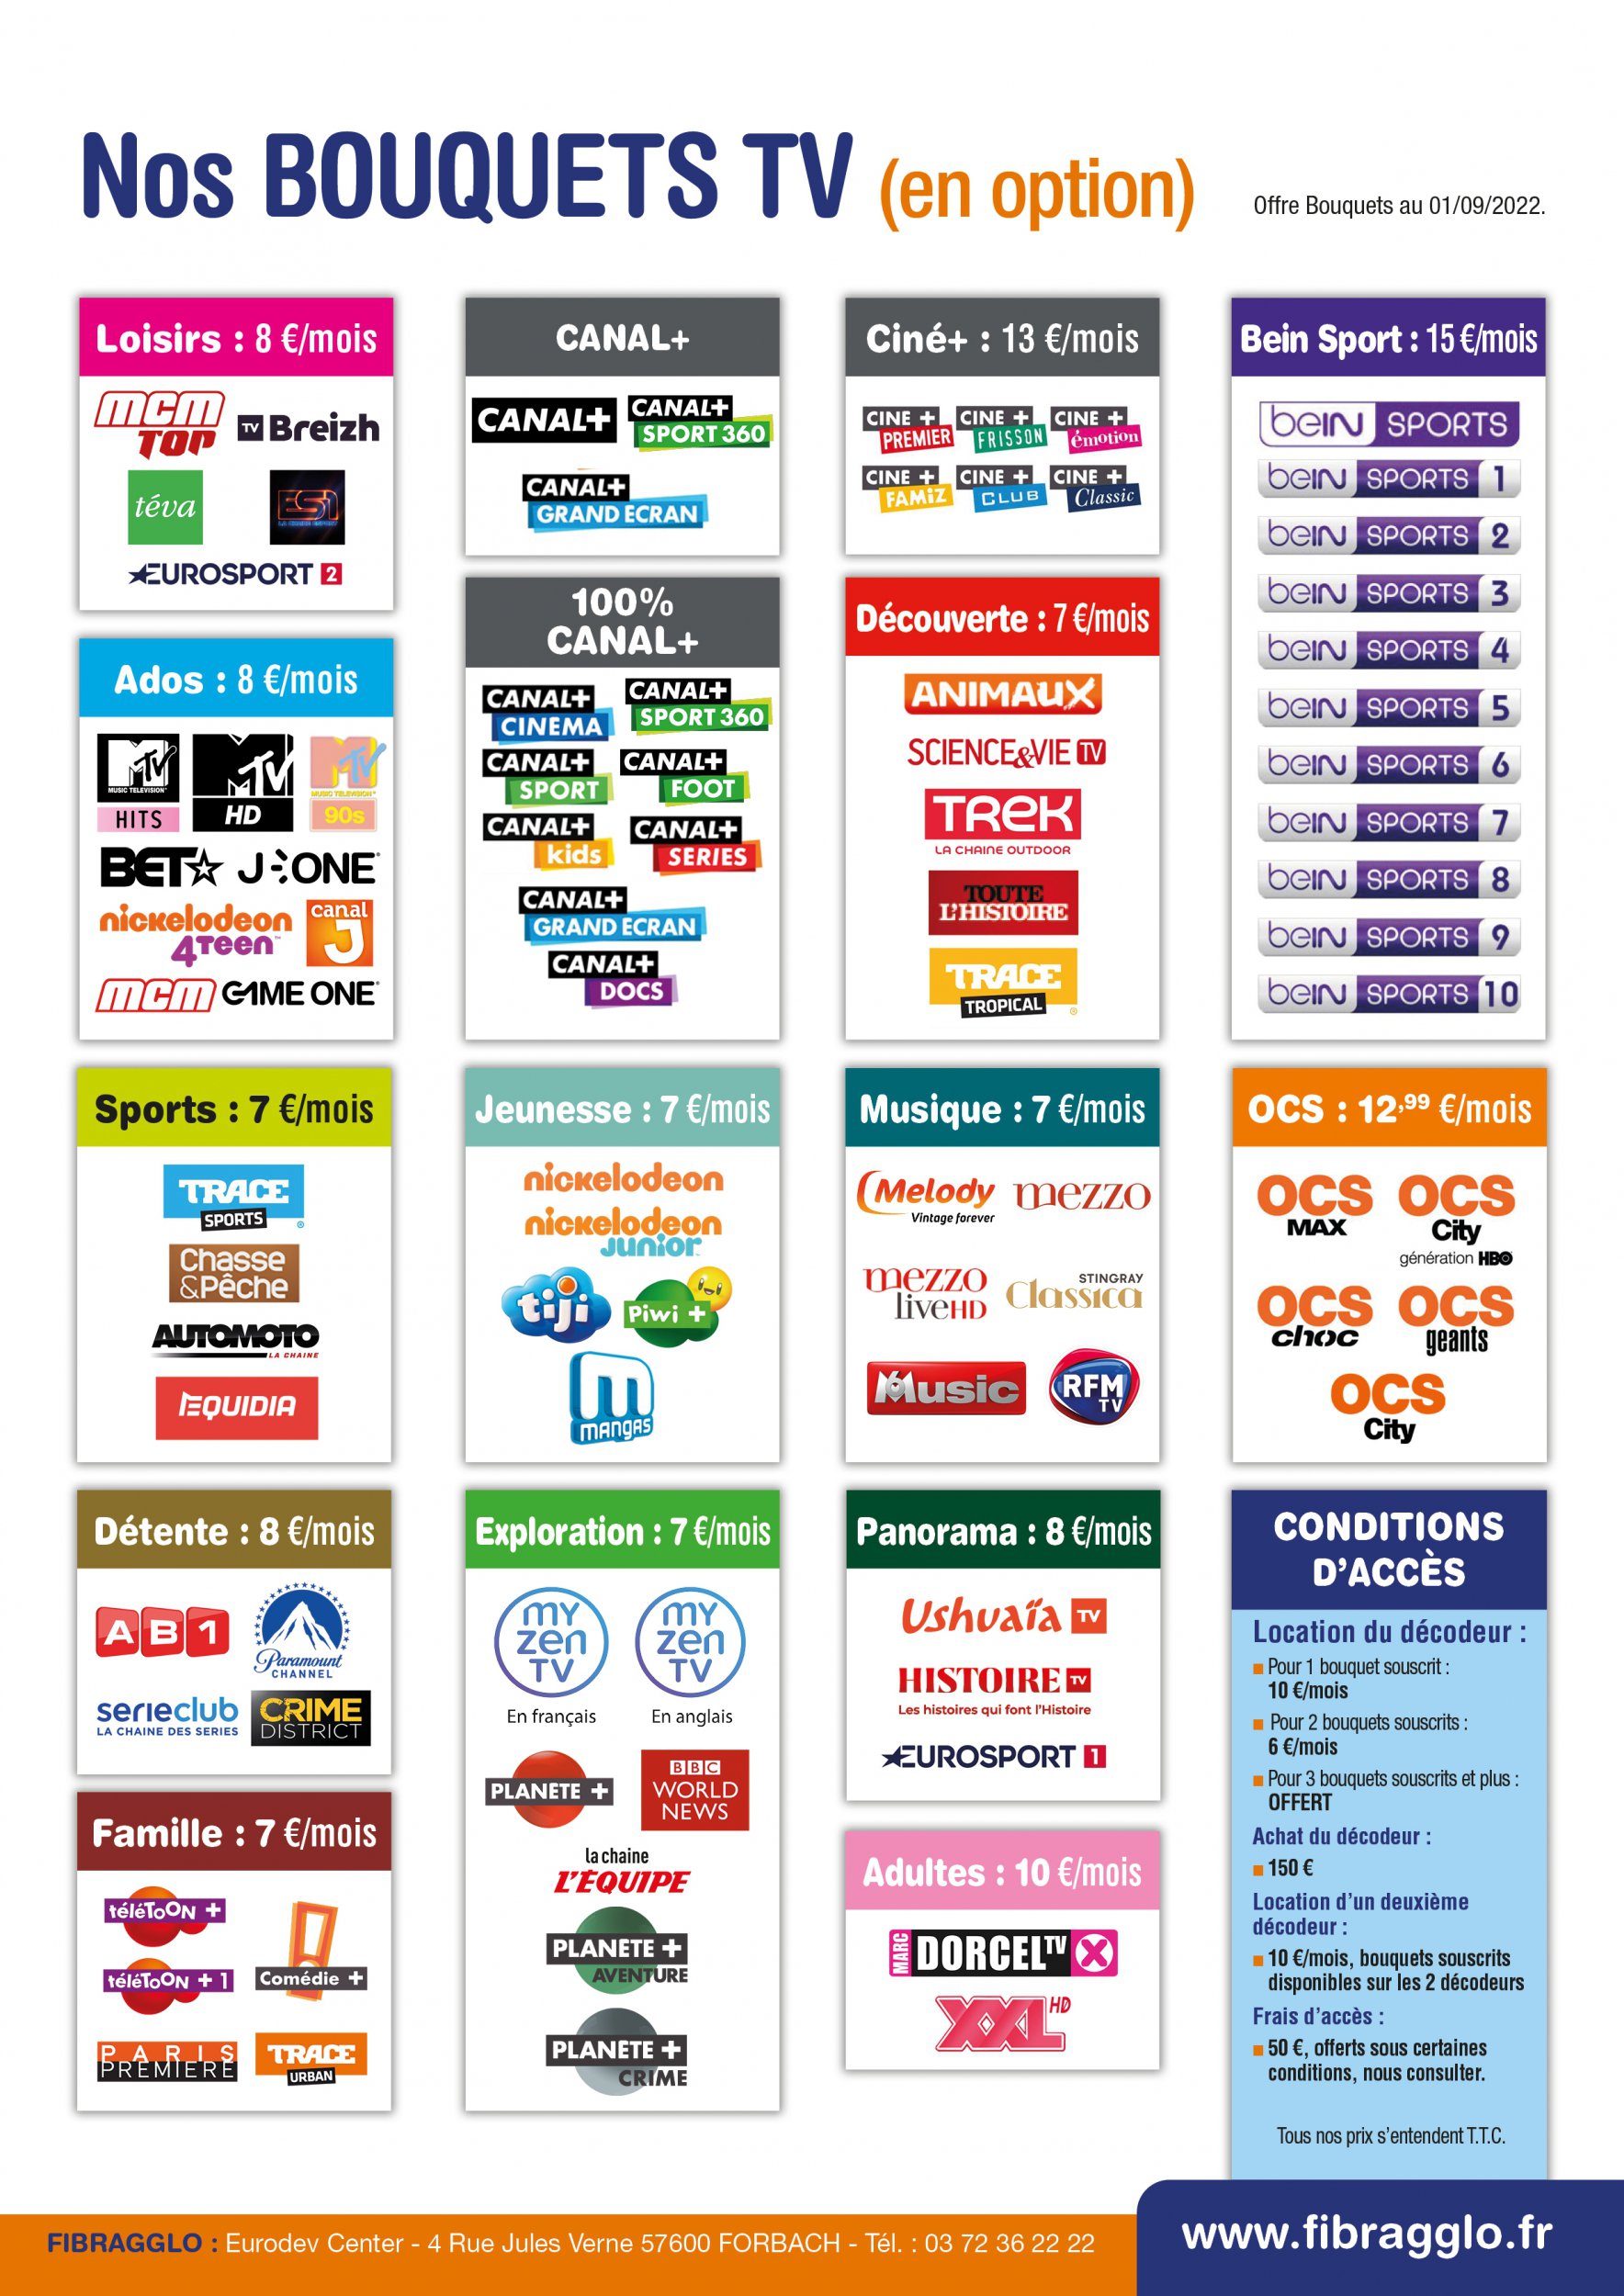 Bouygues TV : offres, chaînes, bouquets TV, options…